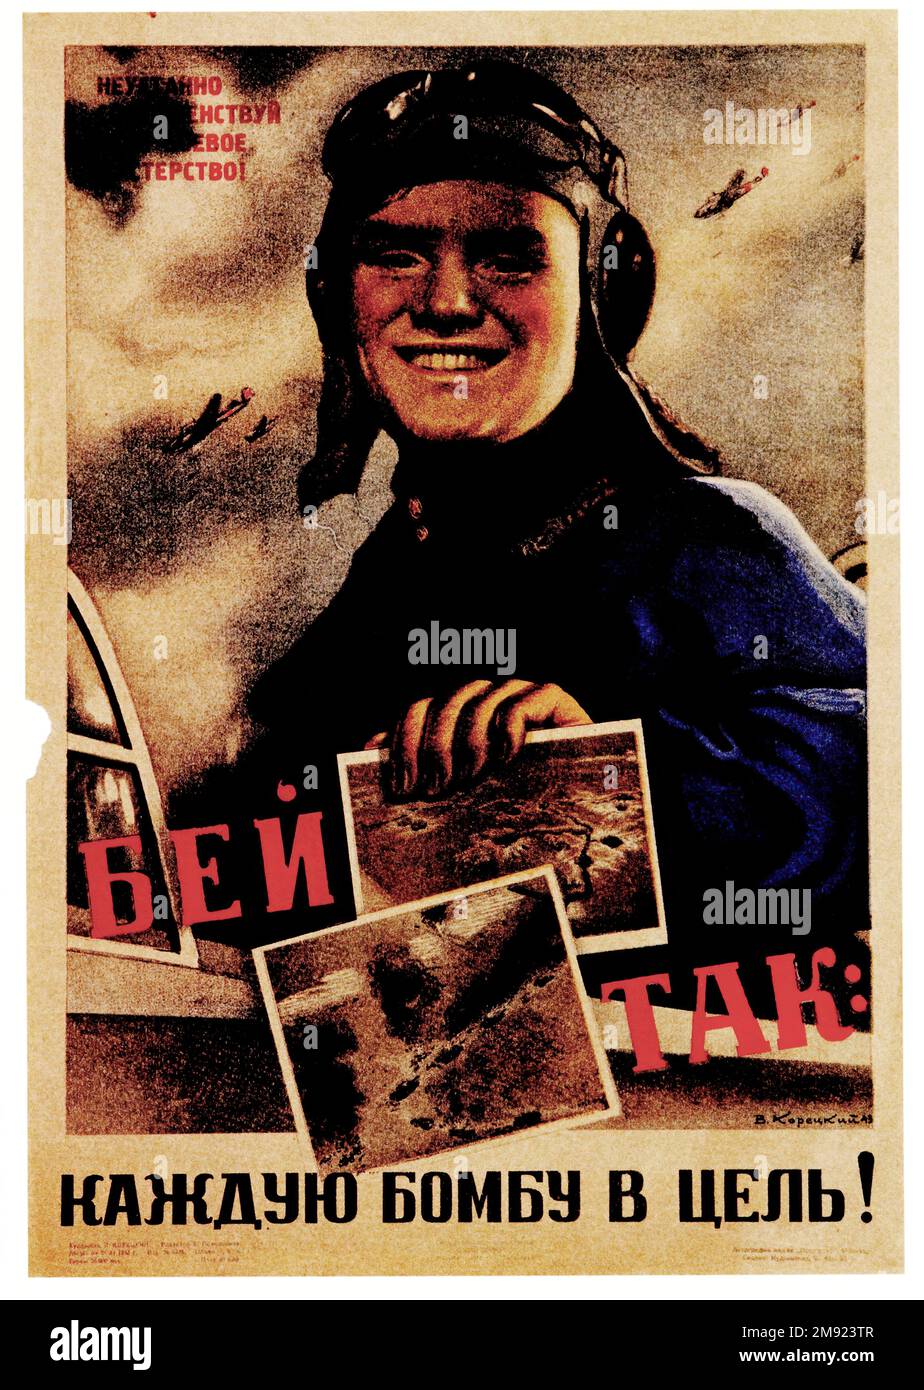 Lotta come questa ogni bomba su Target 1943 - (tradotto dal russo) - poster di propaganda sovietica vintage URSS Foto Stock